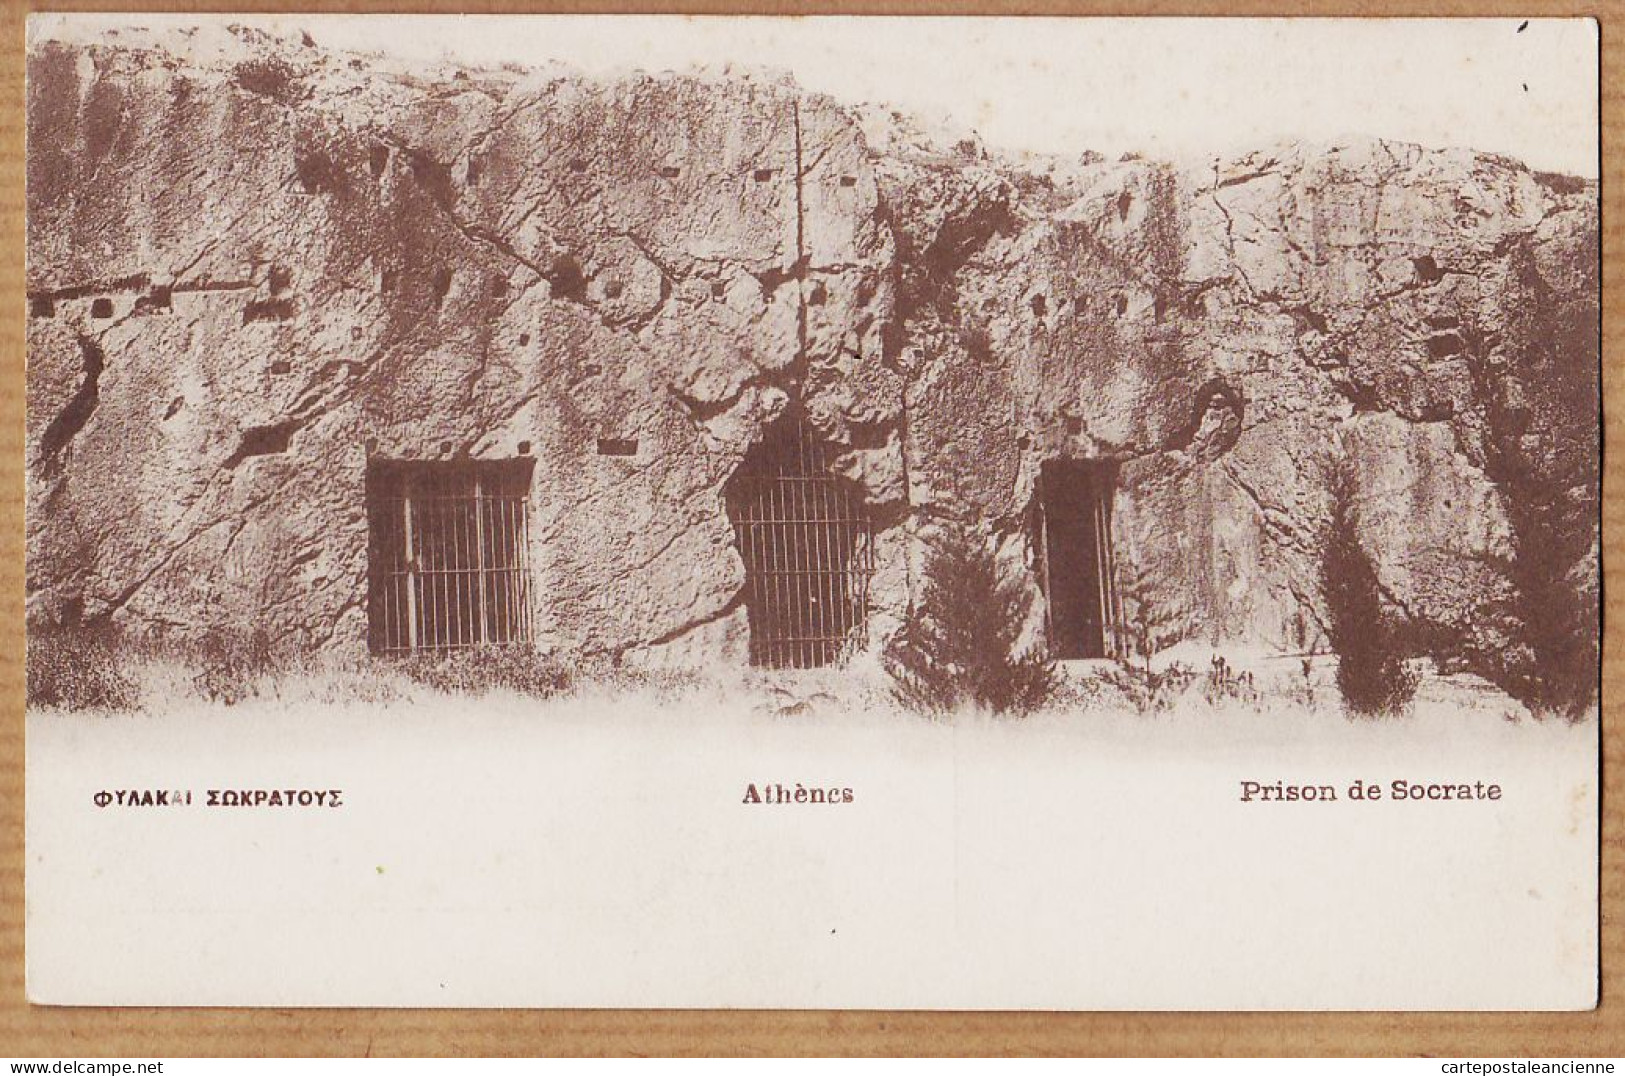 06421 / ATHENES Prison De SOCRATE 1910s Edition Grecque PALLIS COTZIAS 104 - Grèce